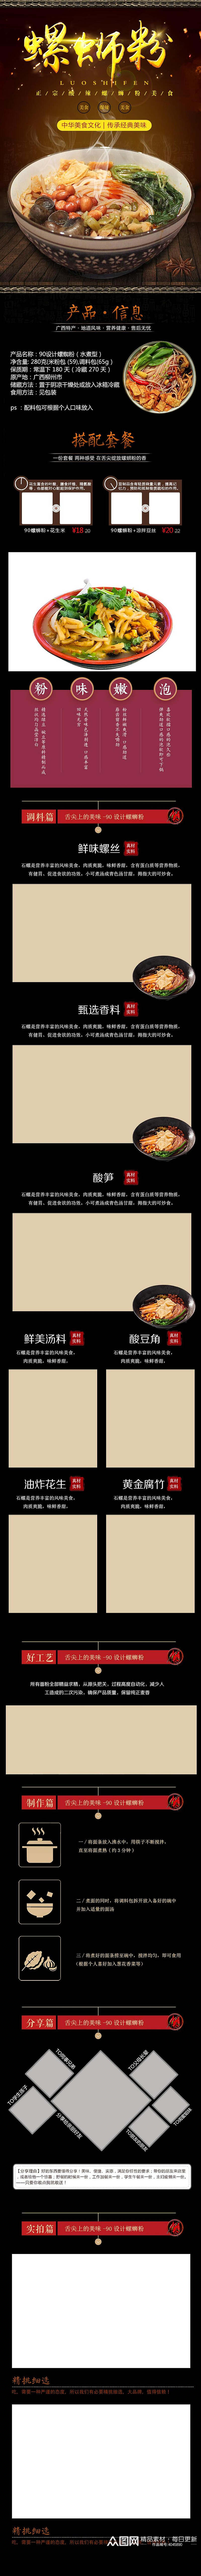 中华美食文化传承经典美味螺蛳粉详情页素材